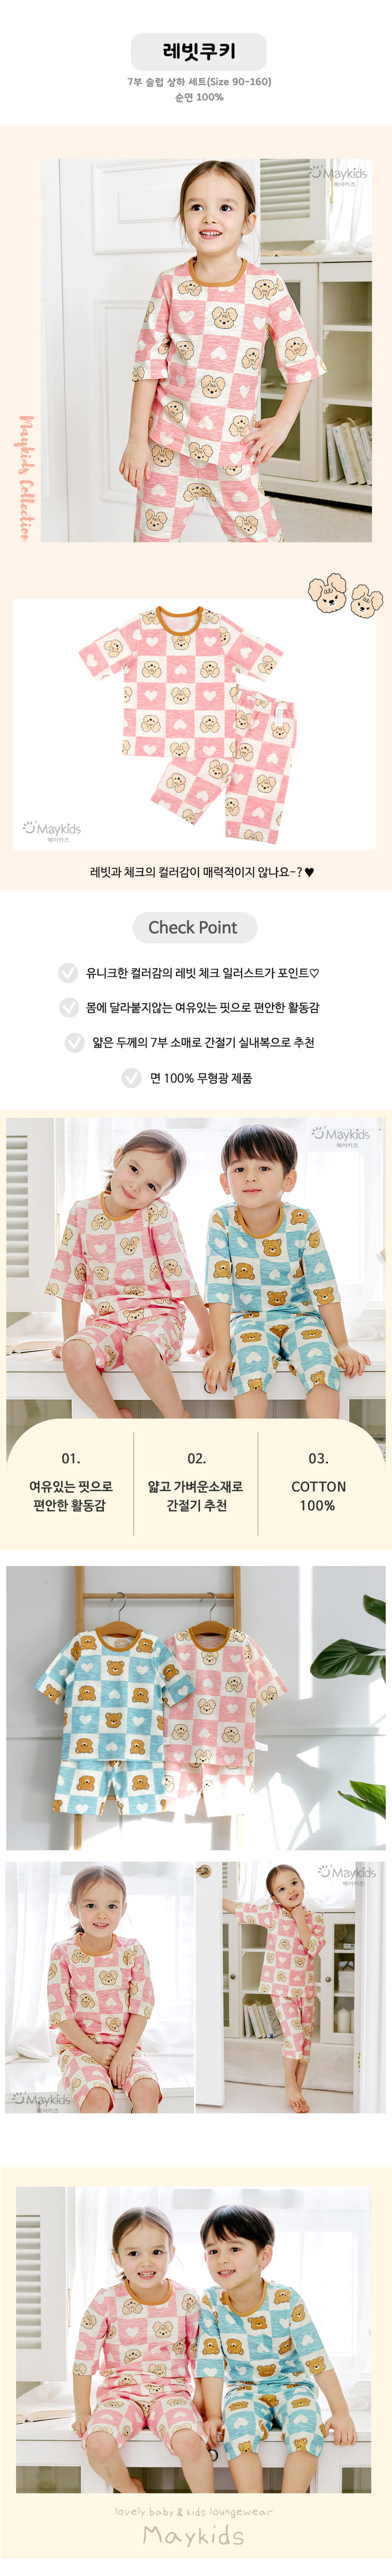 Maykids - Korean Children Fashion - #todddlerfashion - Rabbit Cookies Easywear - 2